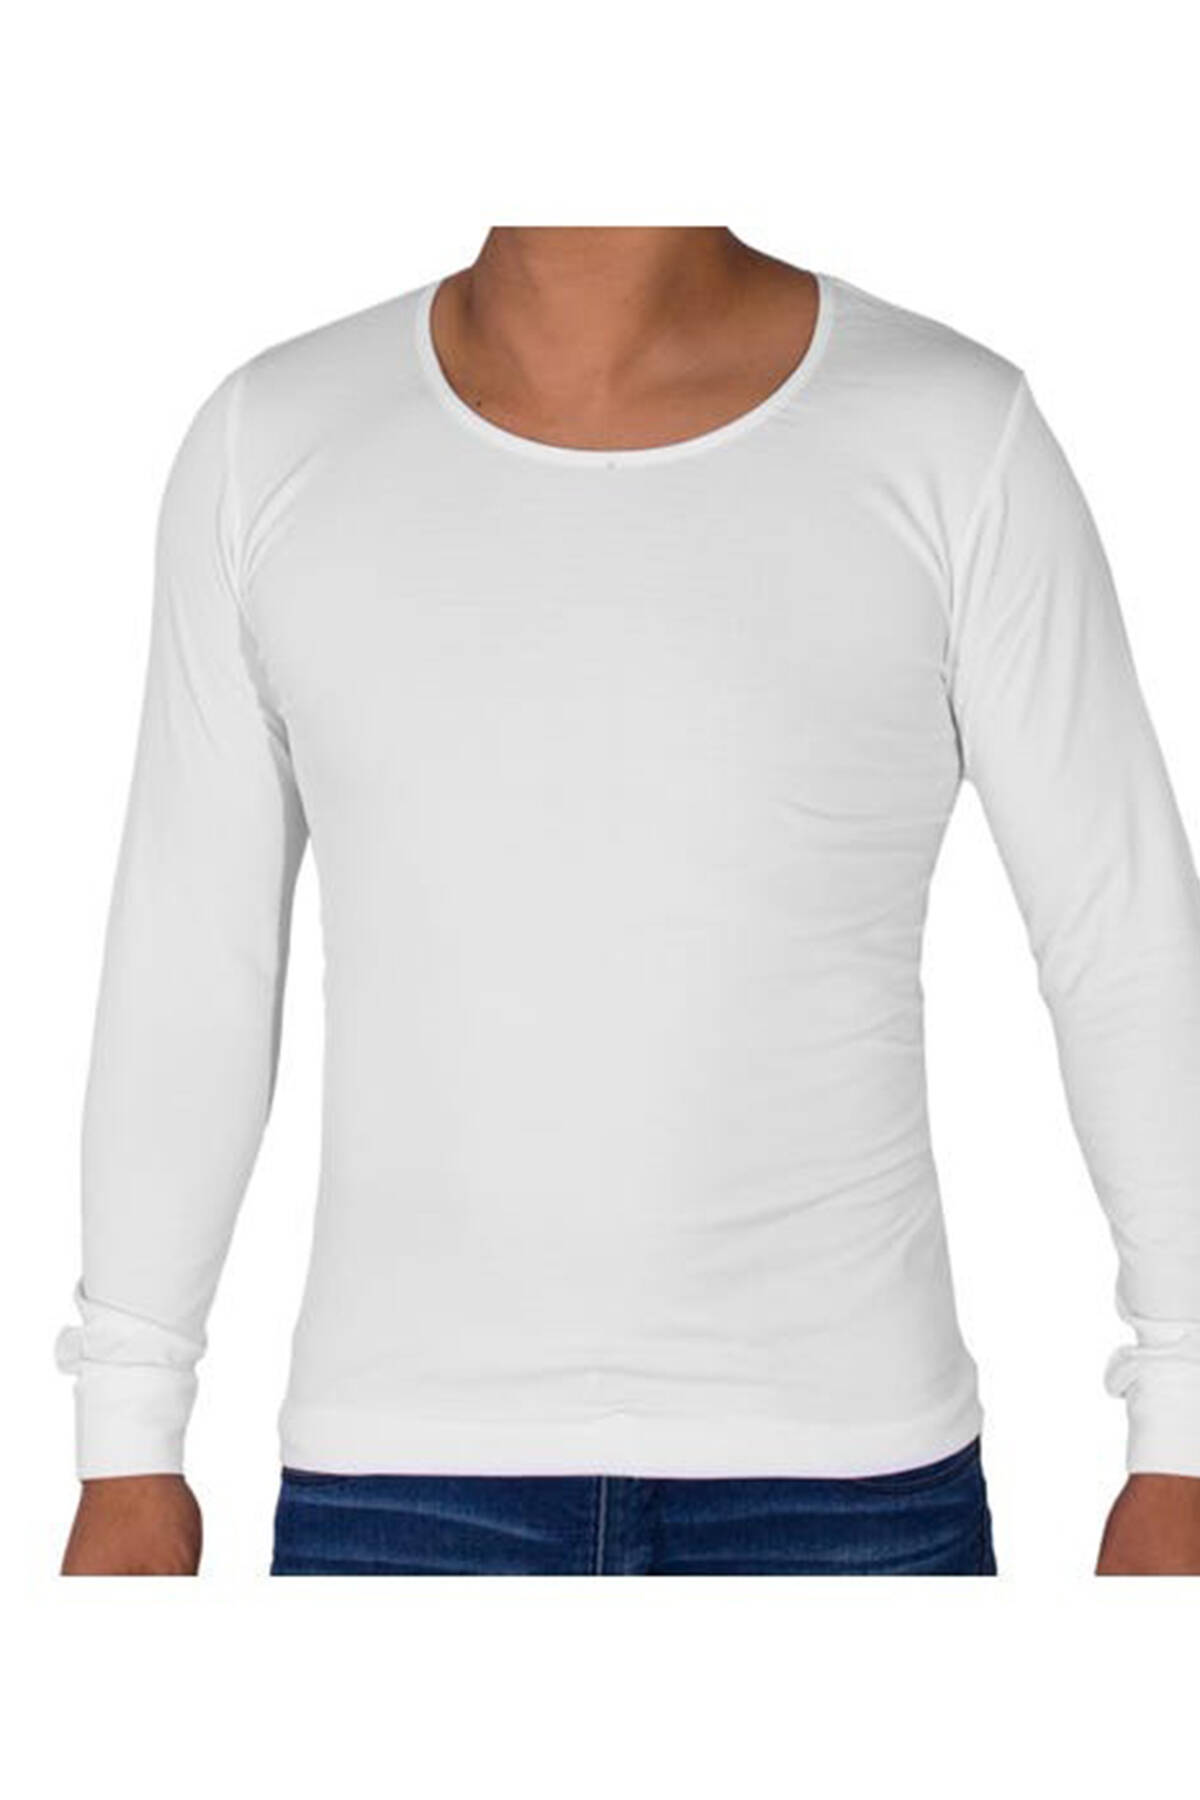 Una herramienta central que juega un papel importante. surf orientación Camiseta térmica de hombre blanca | Distrito Moda